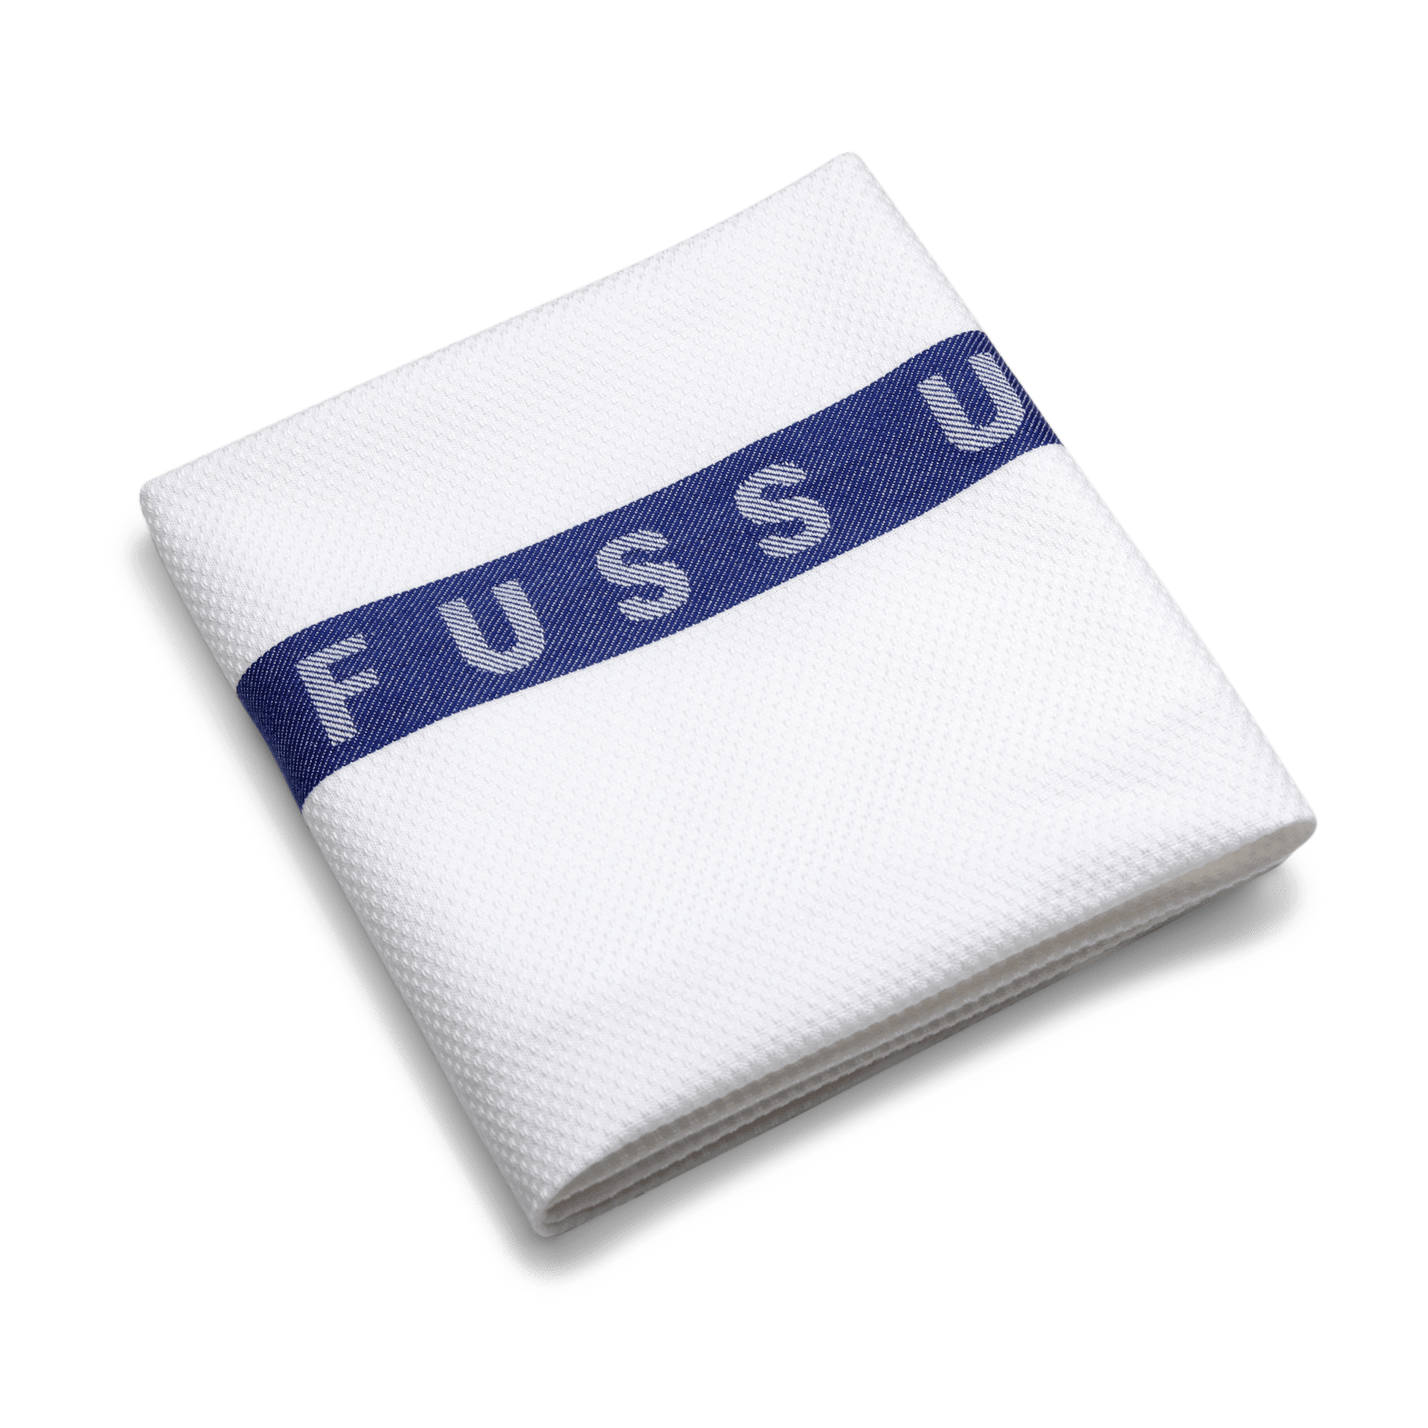 RUCK - Foot Towel with logo "FÜR FUSS UND PFLEGE" in blue